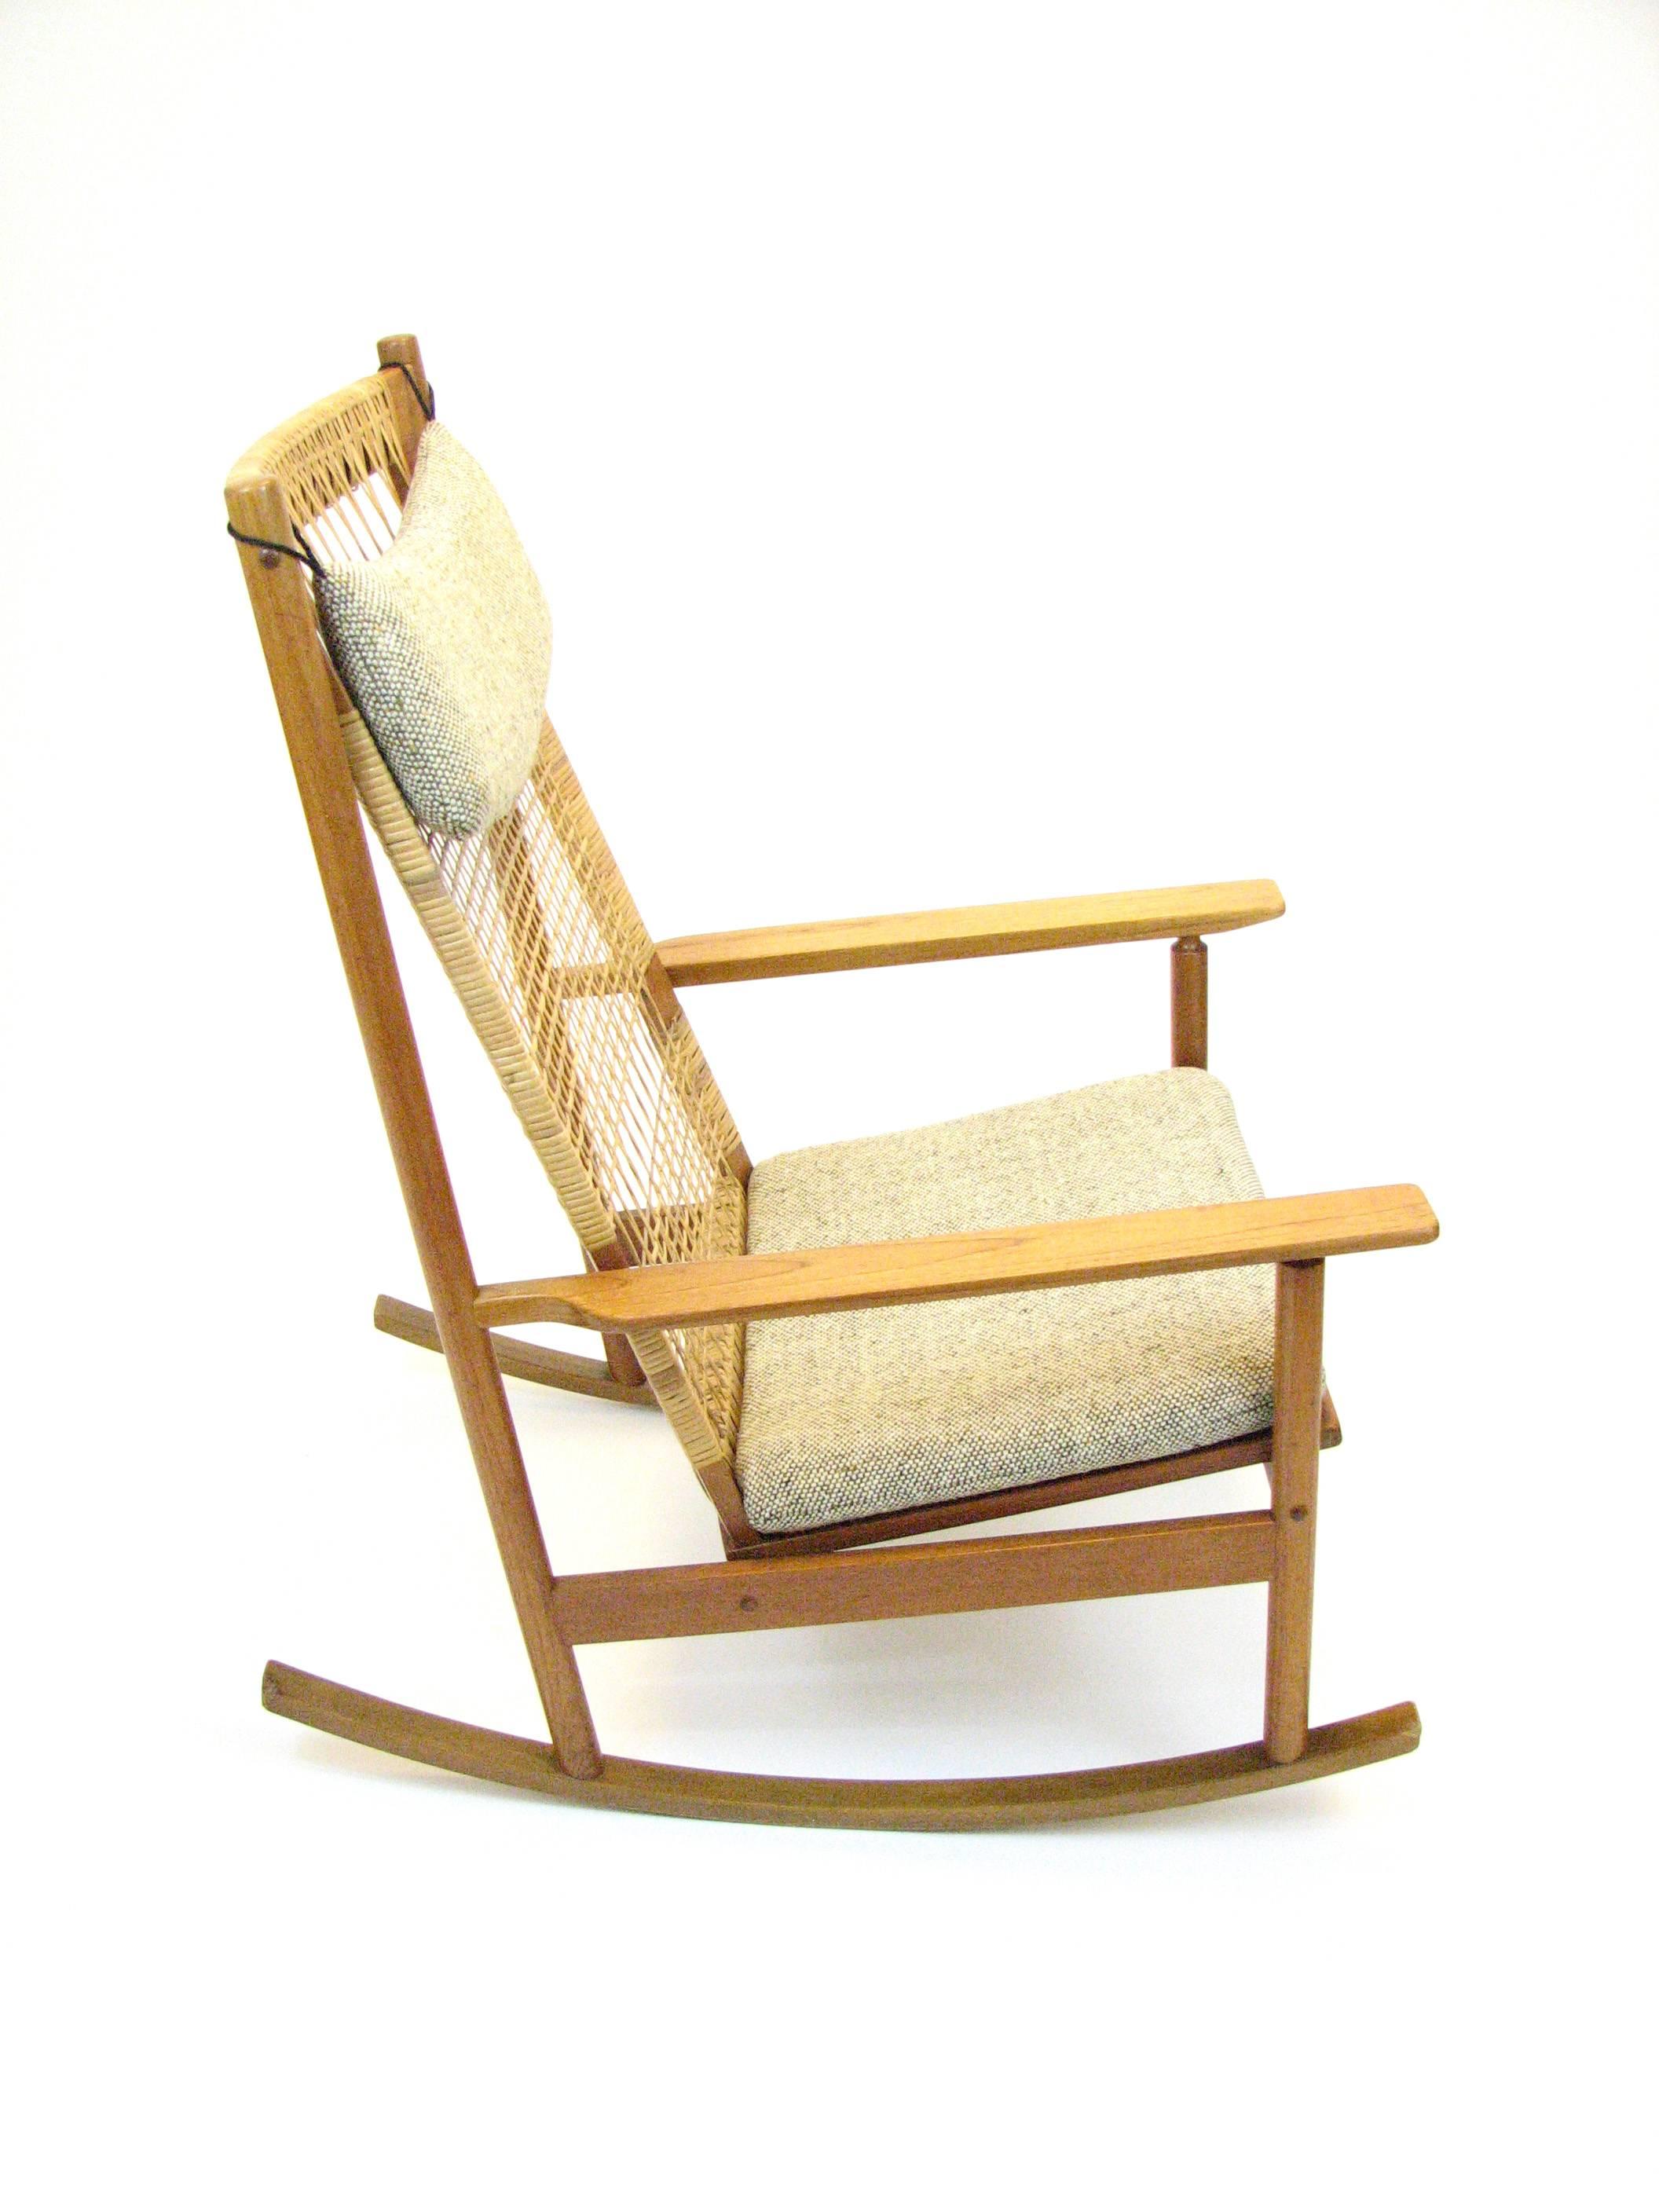 Danish Teak and Cane Rocking Chair by Hans Olsen for Brdr Juul-Kristensen 1